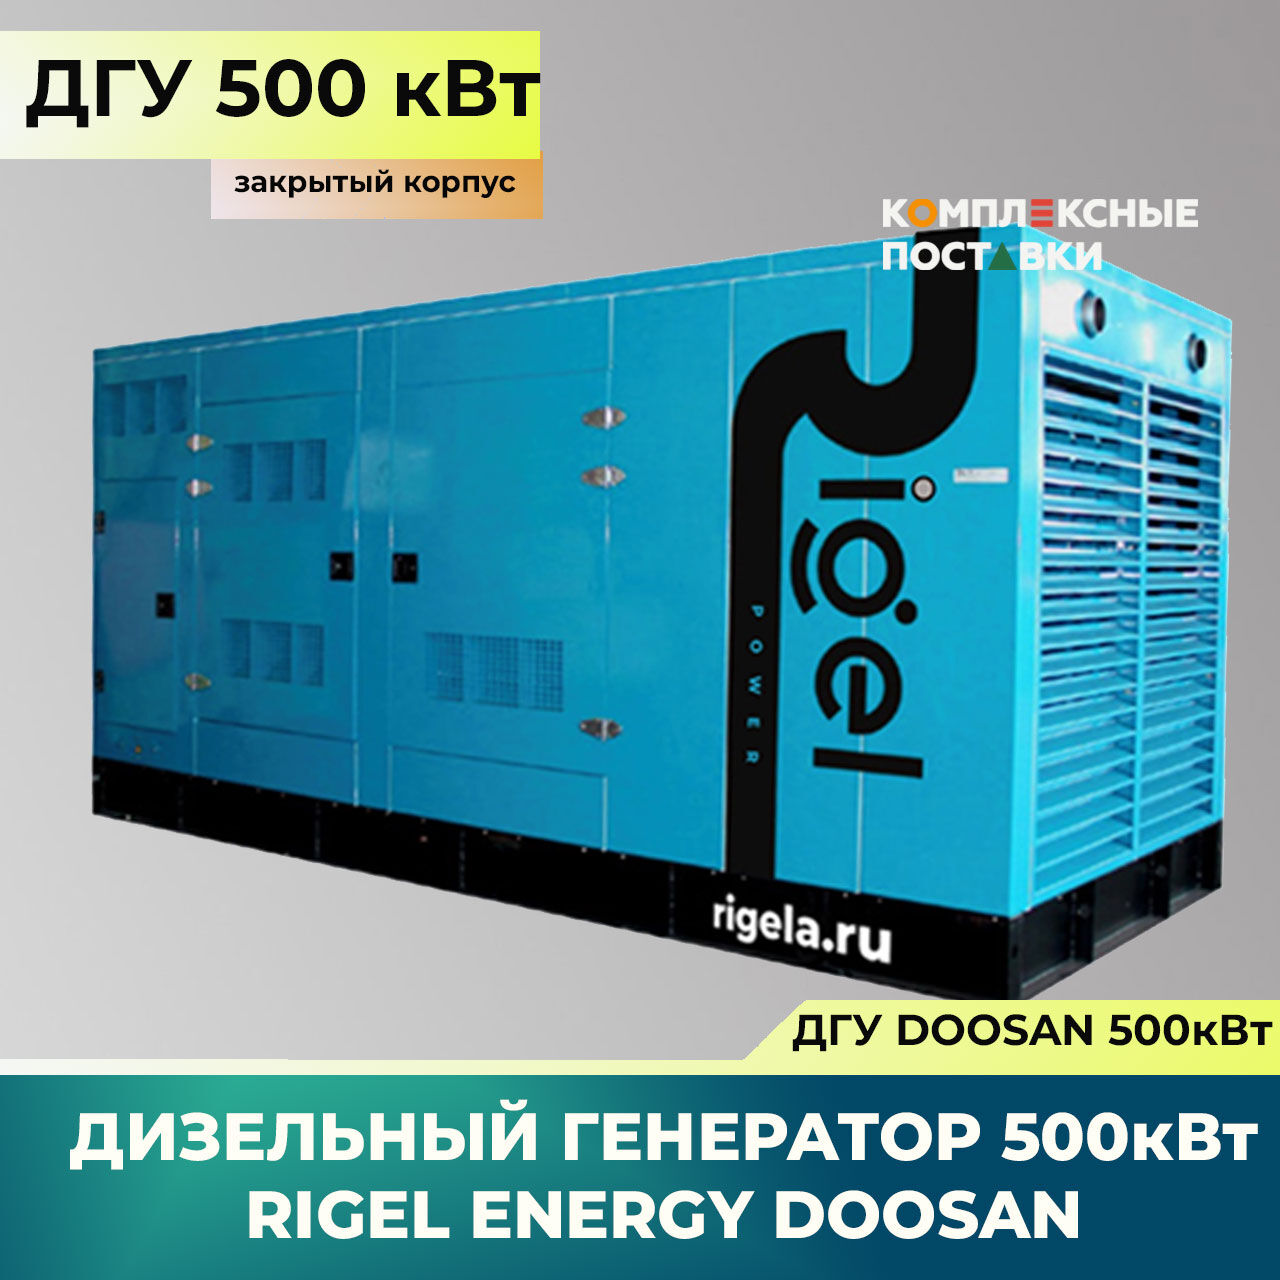 ДГУ 500кВт Doosan Дизель-генератор Rigel Energy Doosan RED 500 (500 кВт, Doosan) закрытый